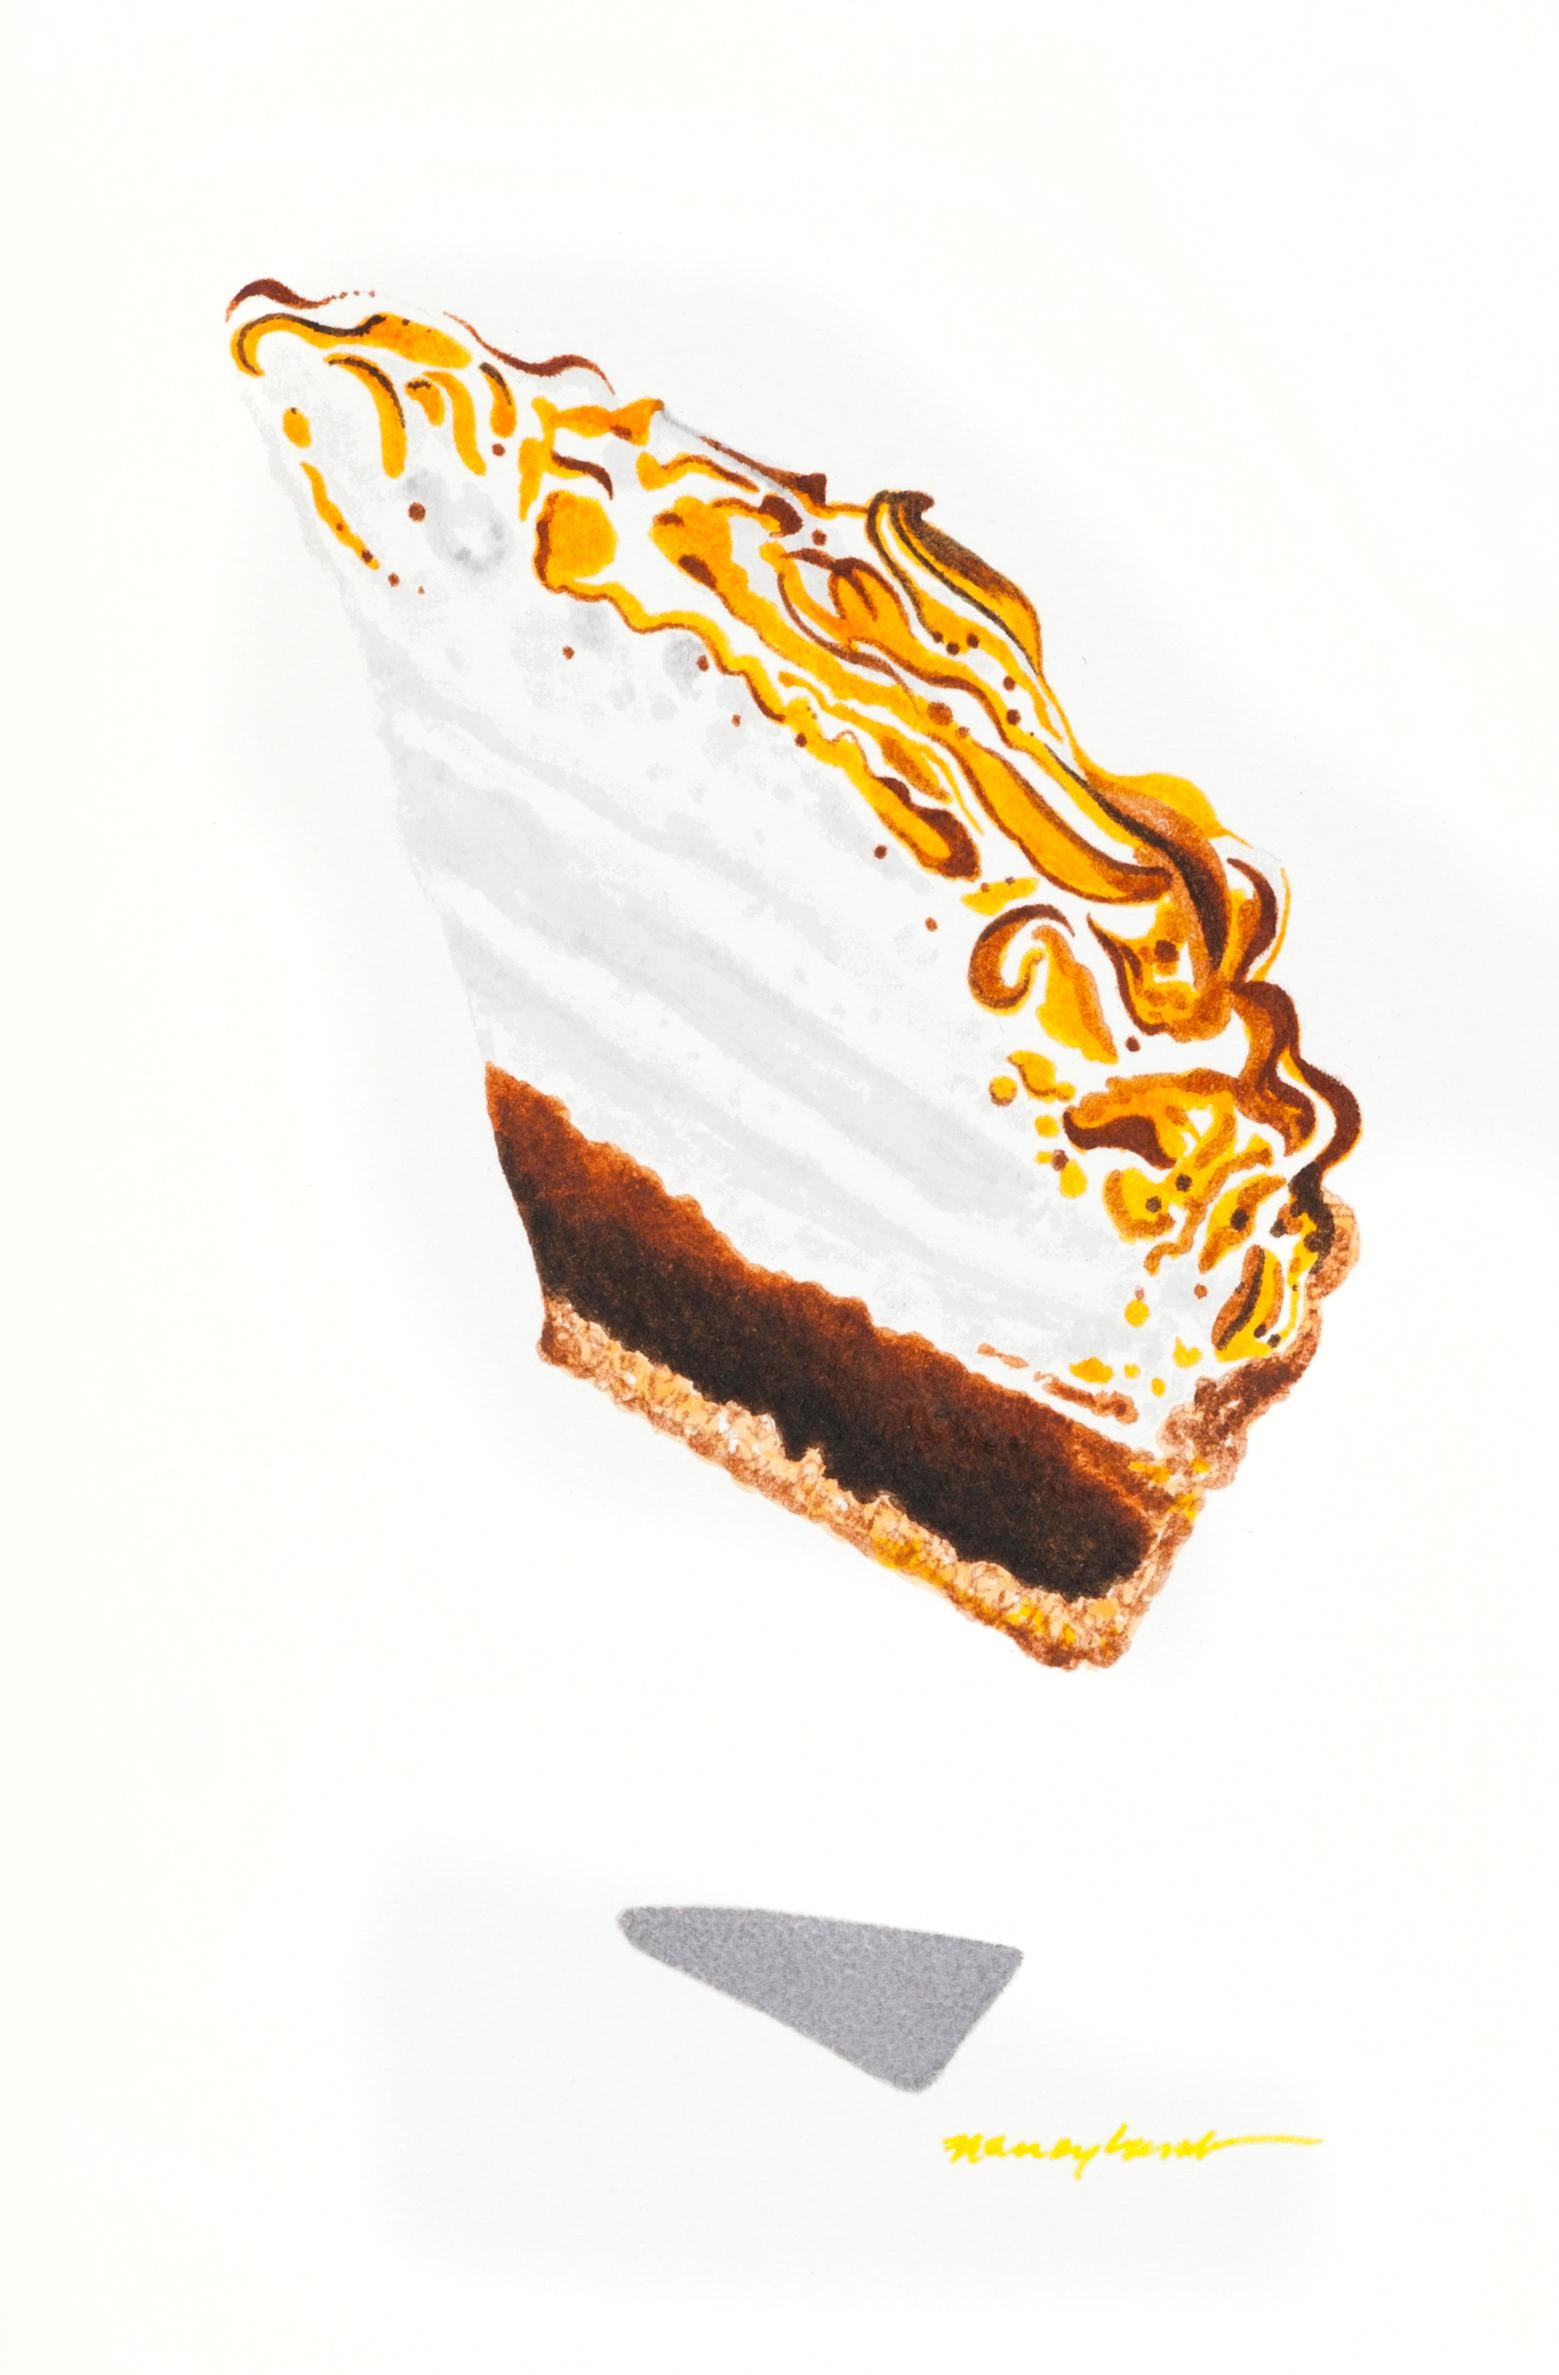 Petite pièce à dessert contemporaine à l'aquarelle en forme de chocolat idéale pour la cuisine, le bar et le bar 